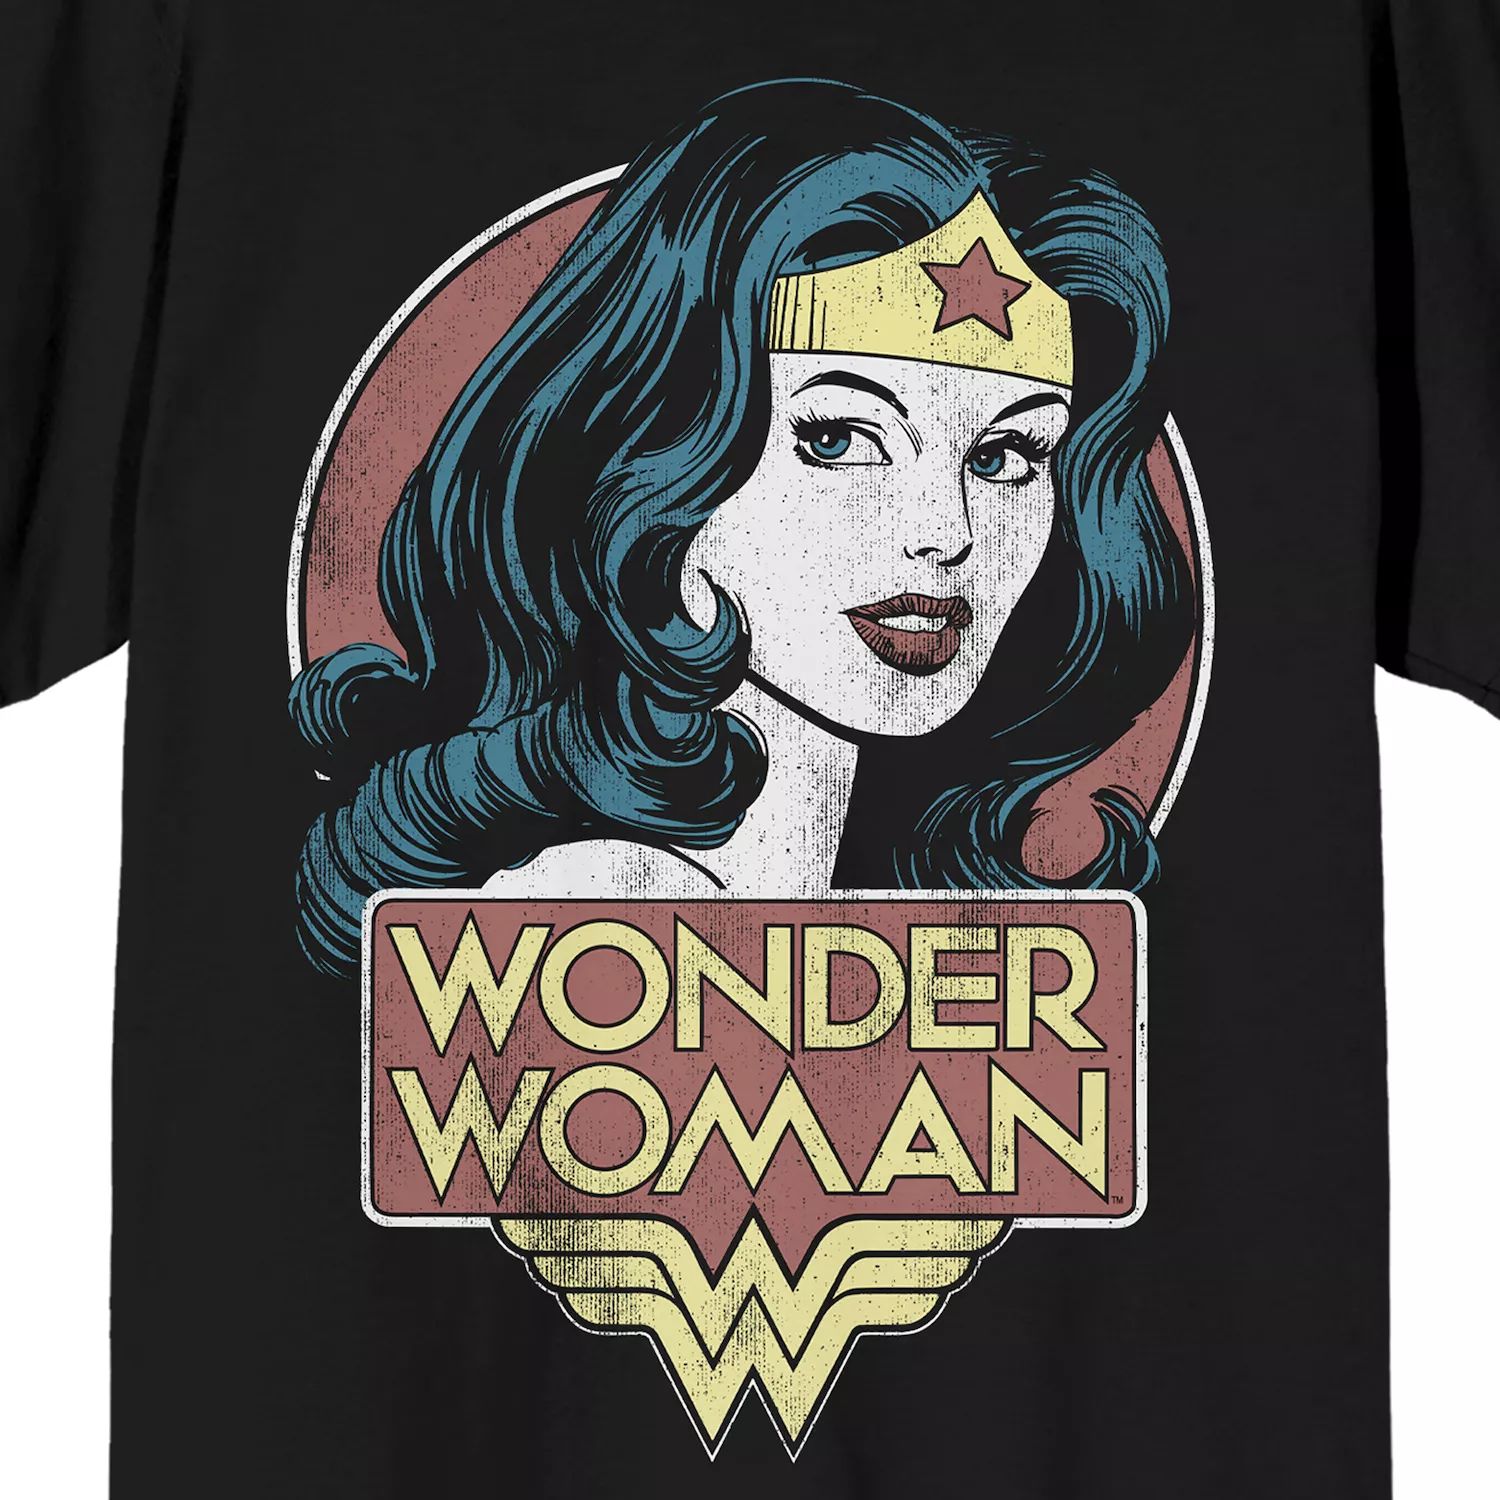 Мужская футболка Wonder Woman с портретом Licensed Character bardugo l wonder woman warbringer